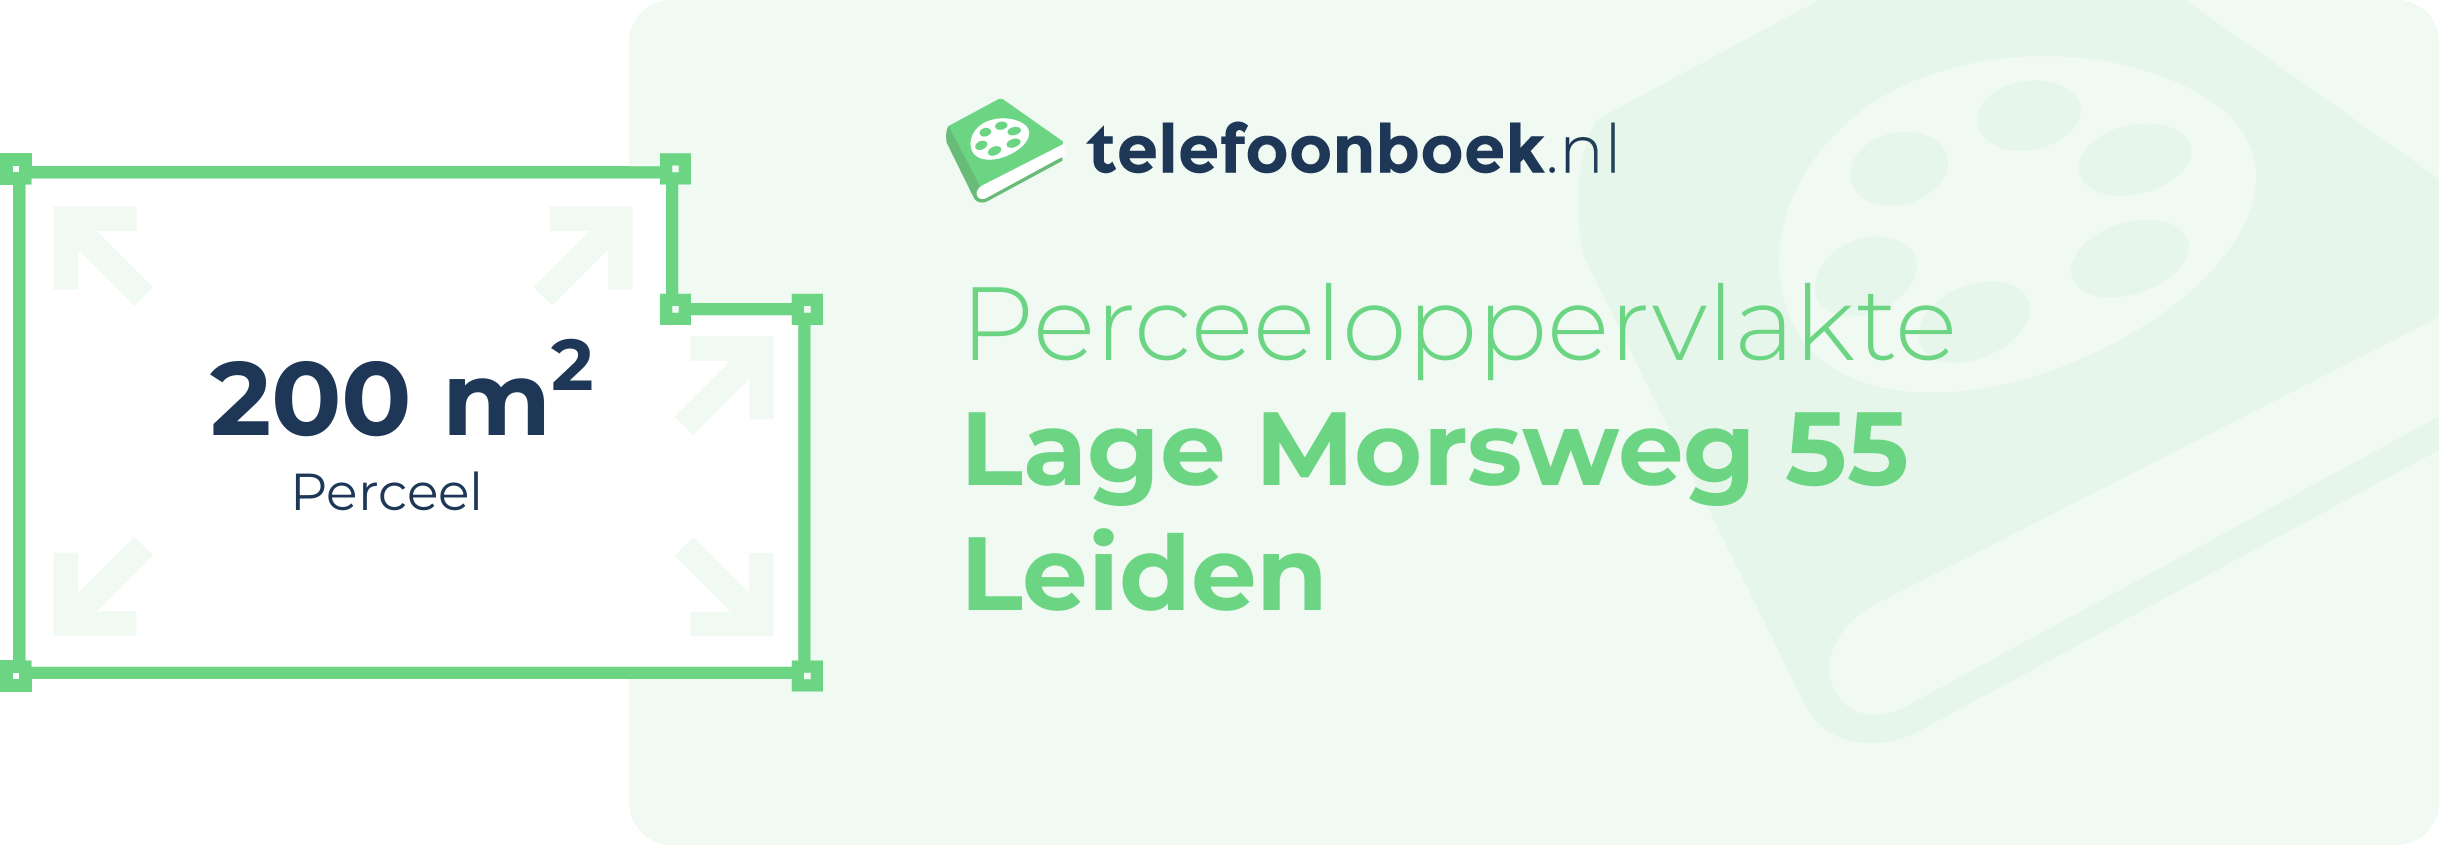 Perceeloppervlakte Lage Morsweg 55 Leiden